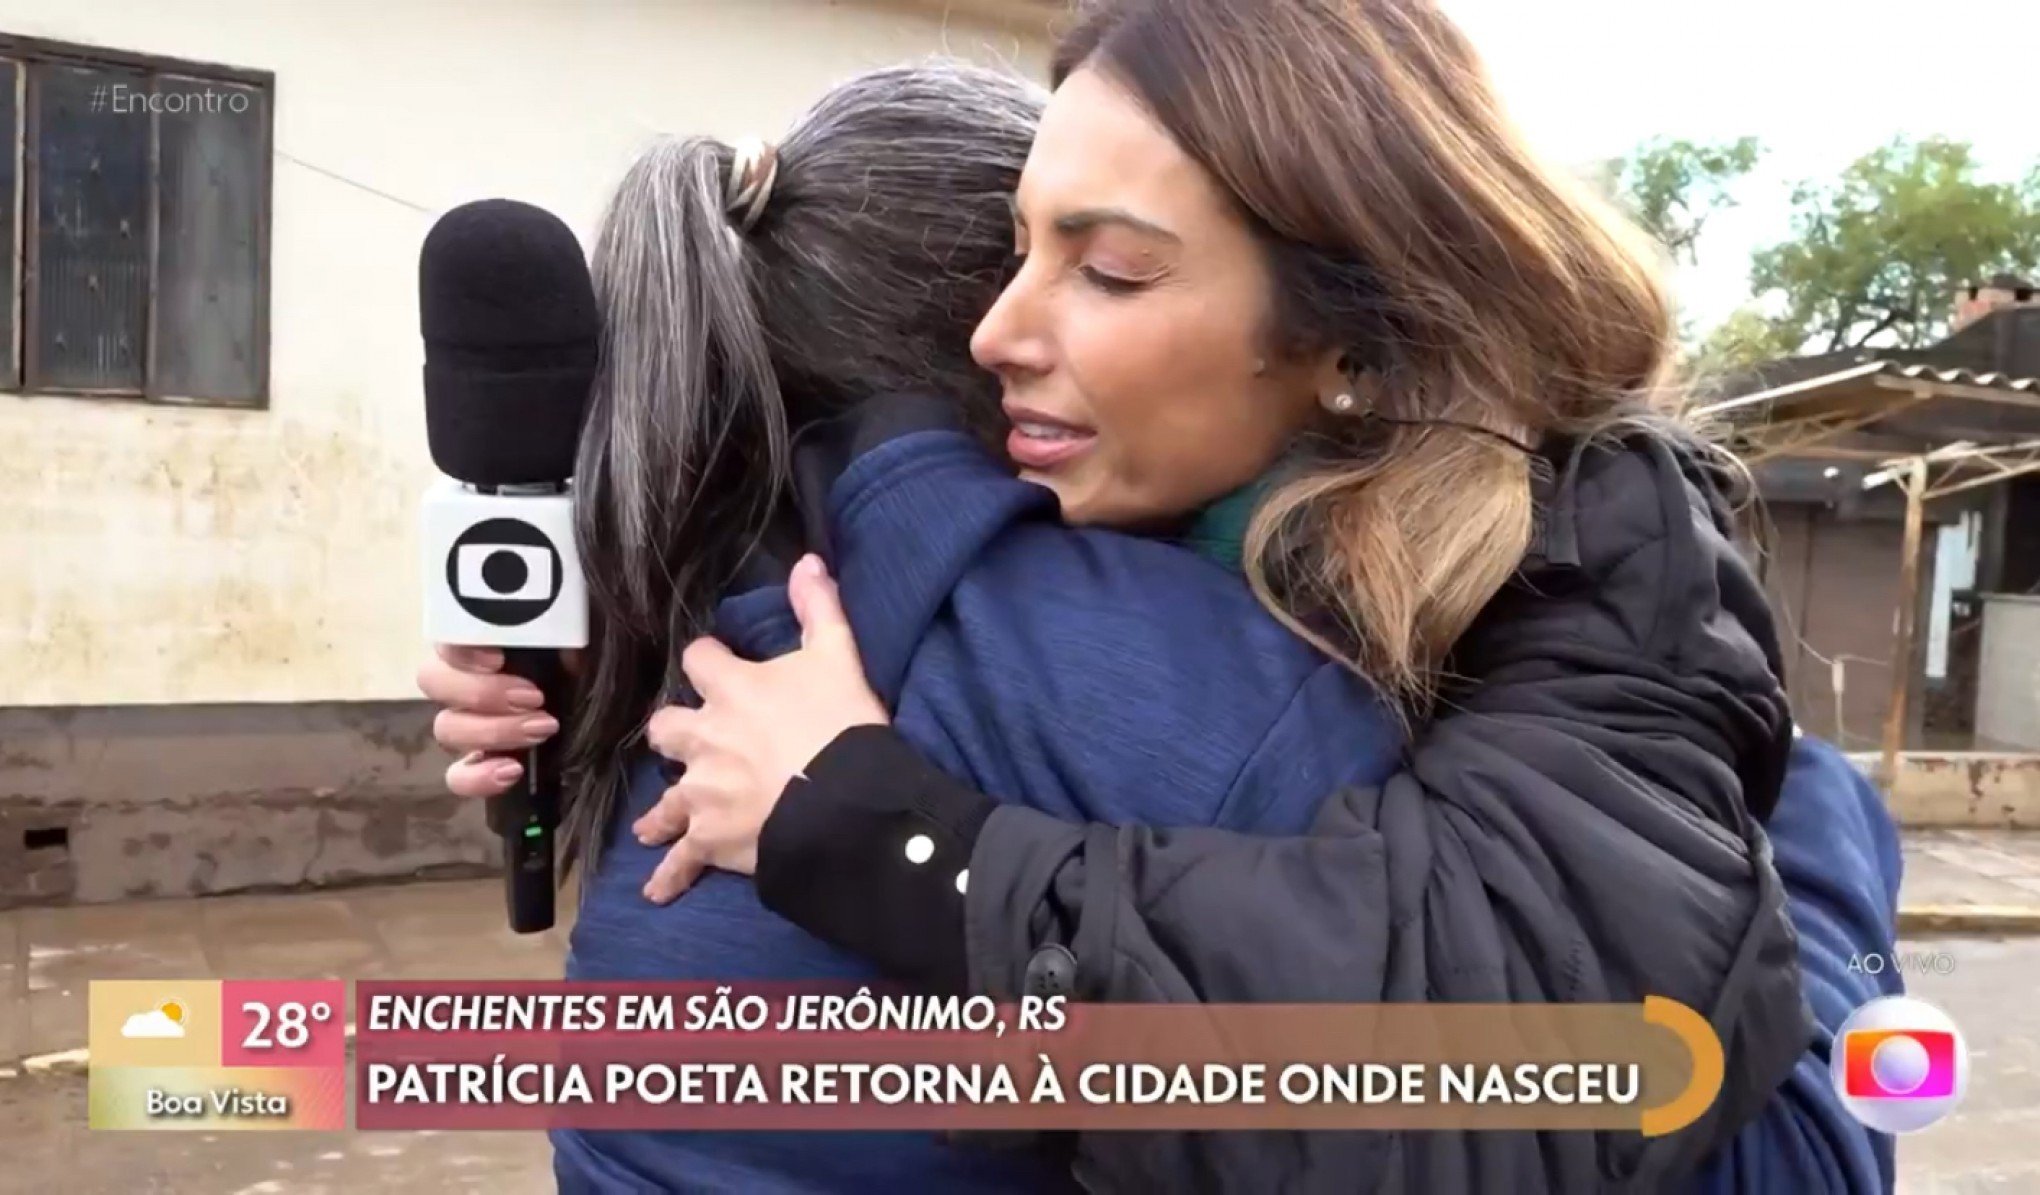 Patrícia Poeta encontra prima durante programa ao vivo sobre enchente em São Jerônimo